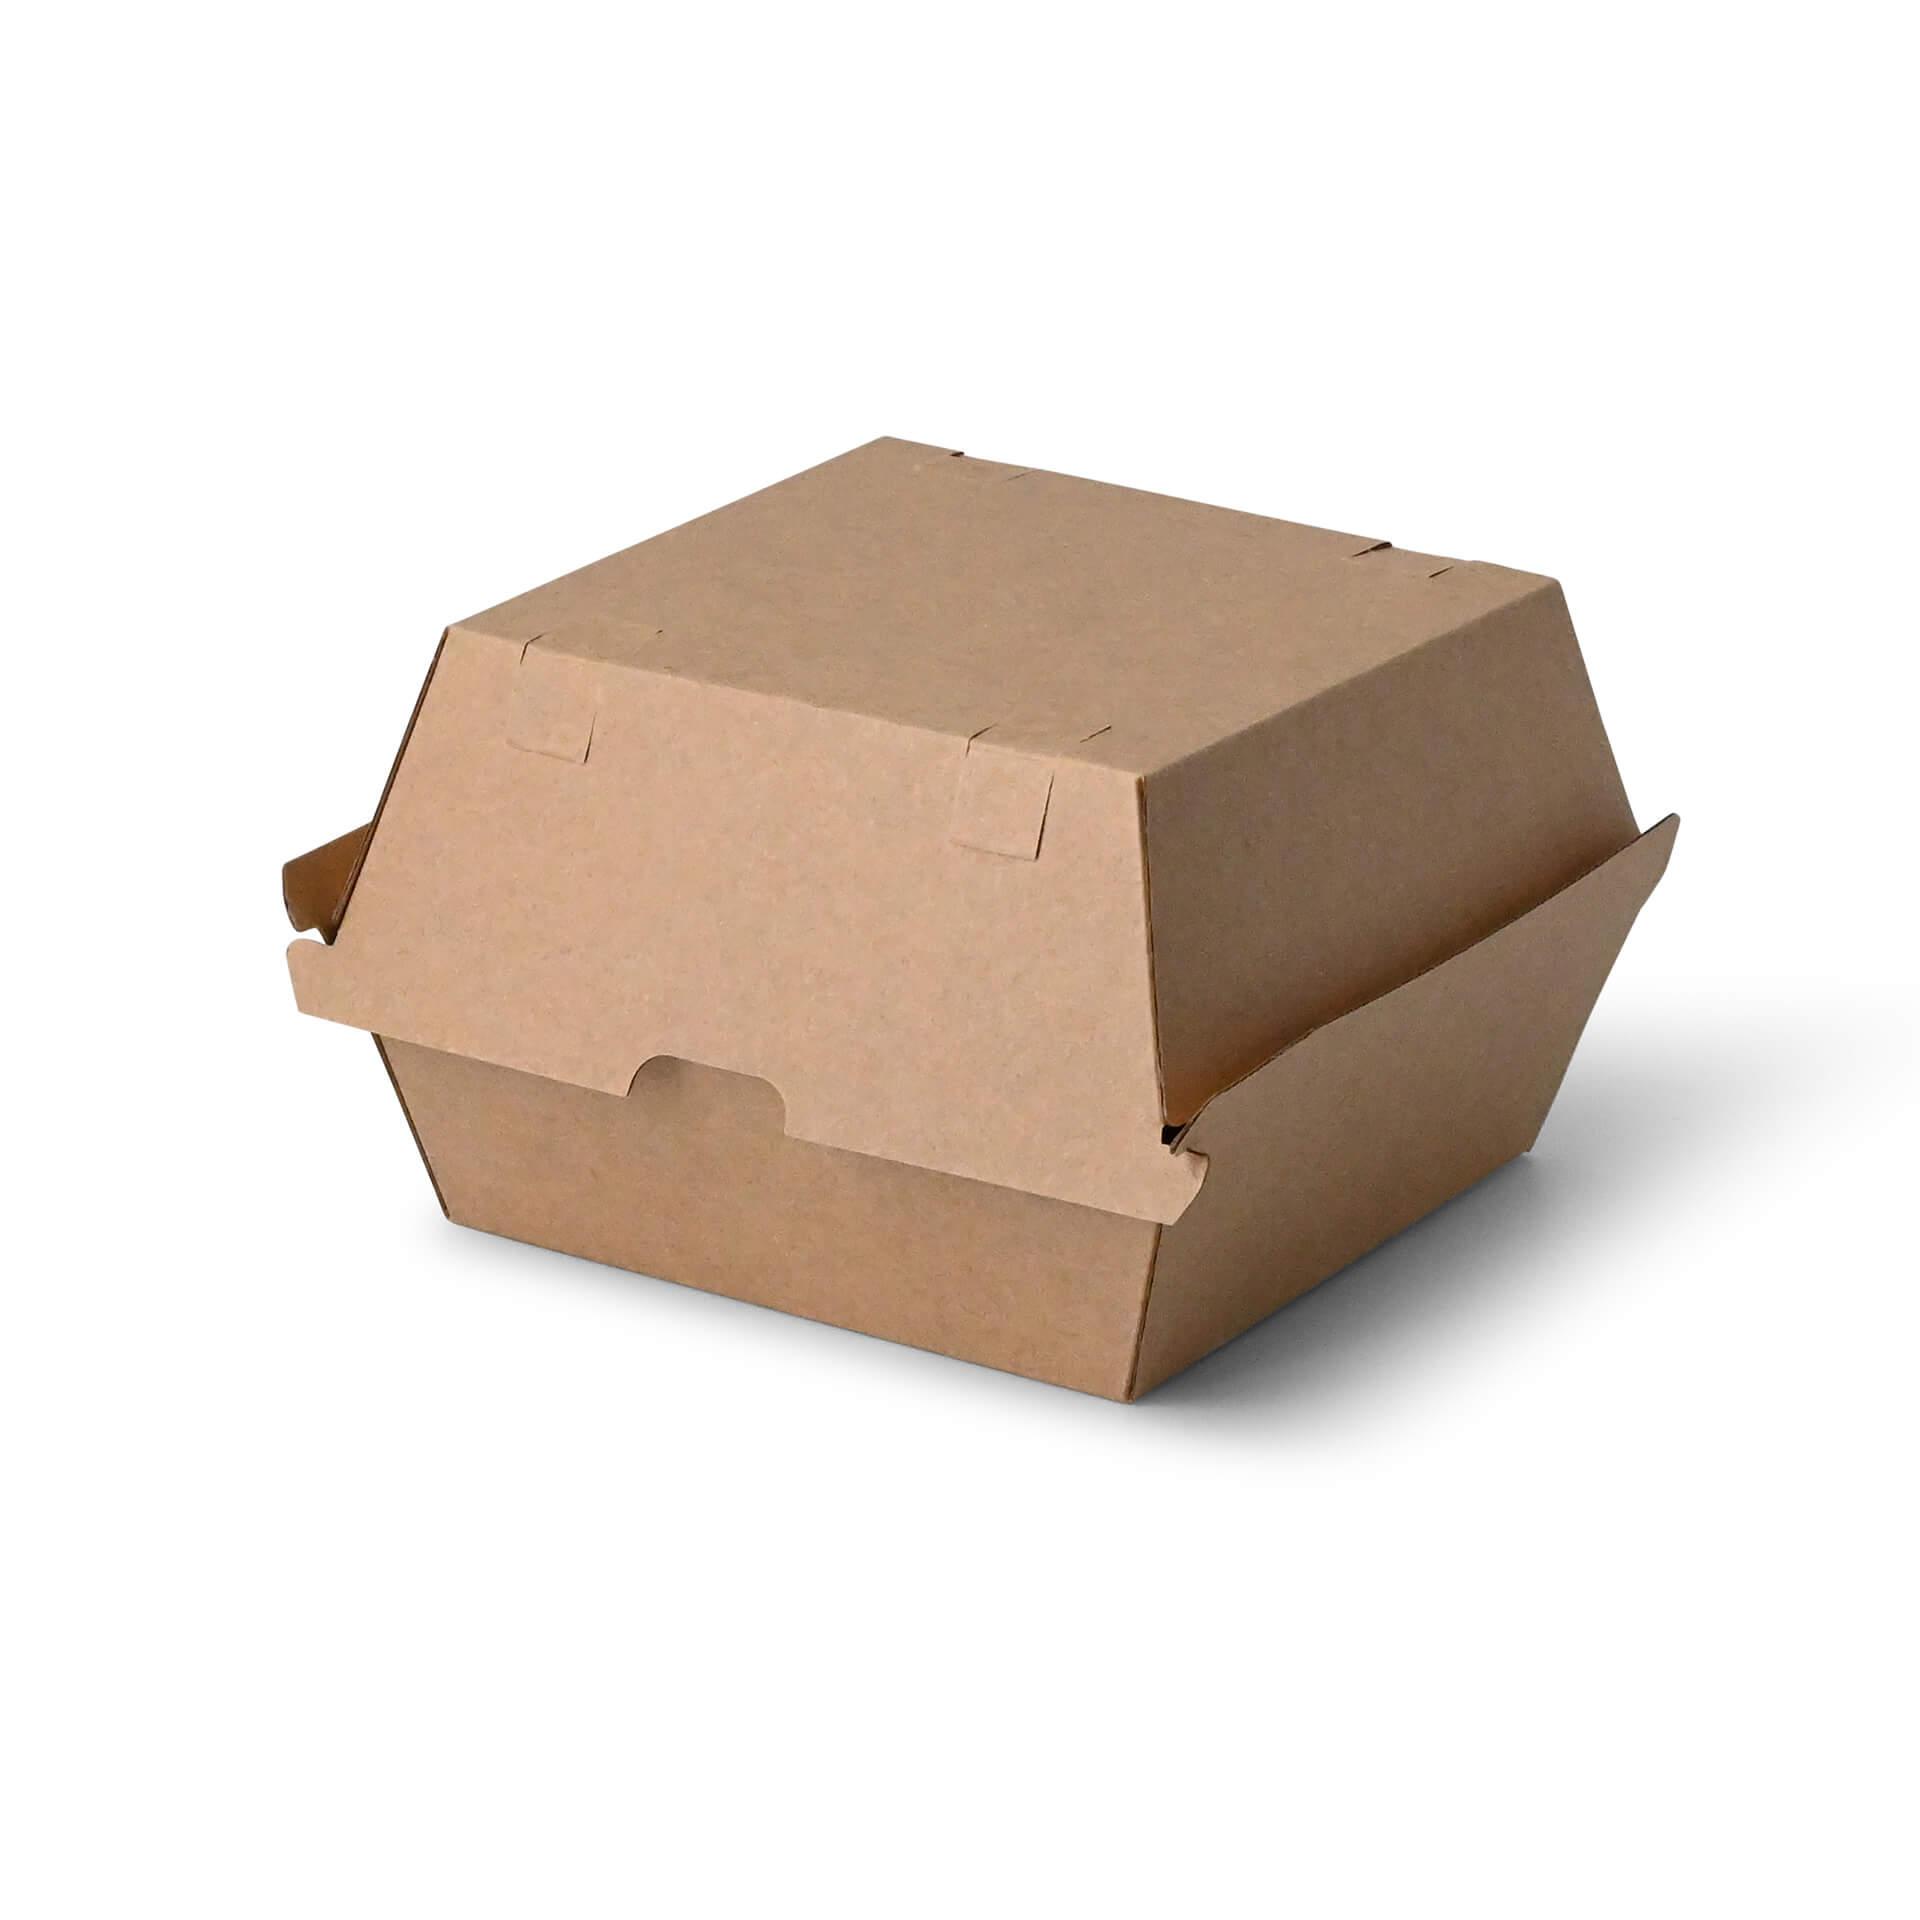 Burgerboxen 16,8 x 15,8 x 9,8 cm, Kraftkarton, braun